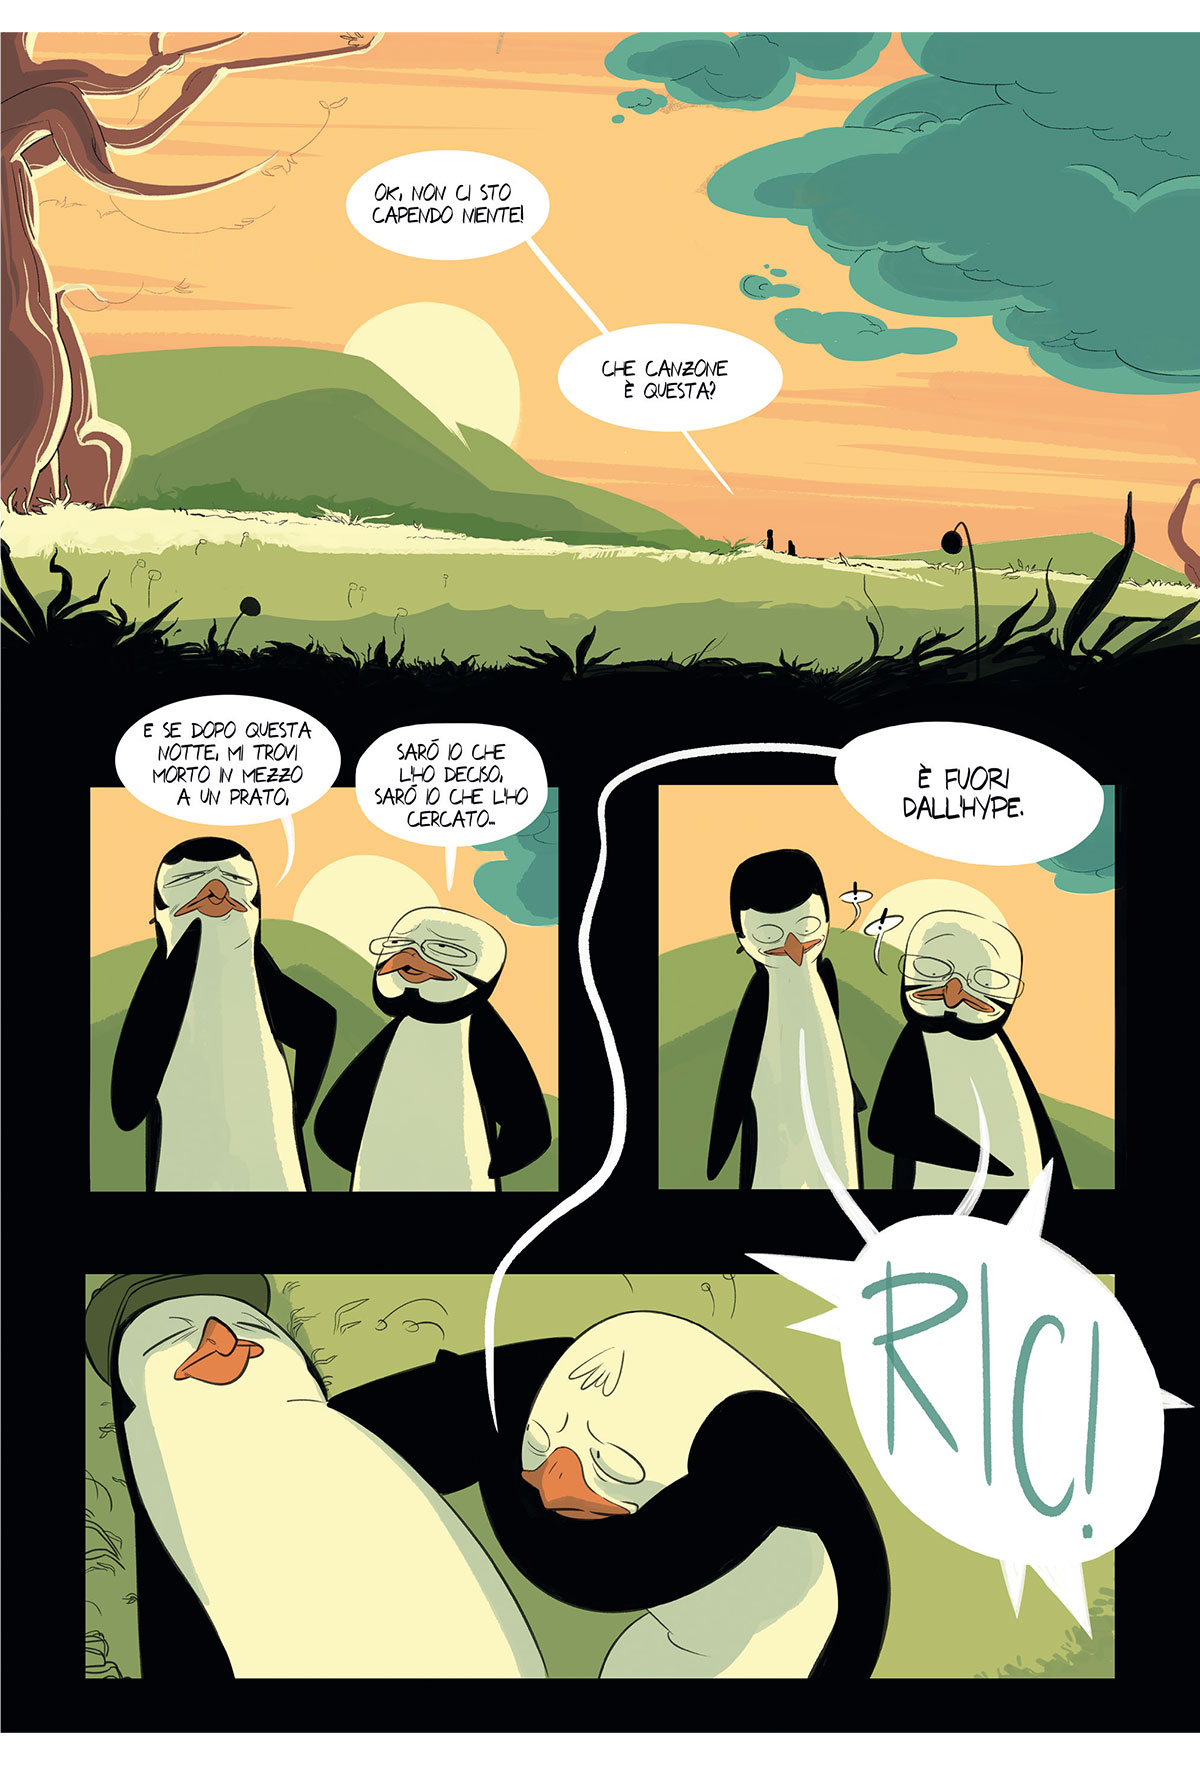 Pinguini Tattici Nucleari a fumetti : Aa. Vv., Aa. Vv.: : Libri